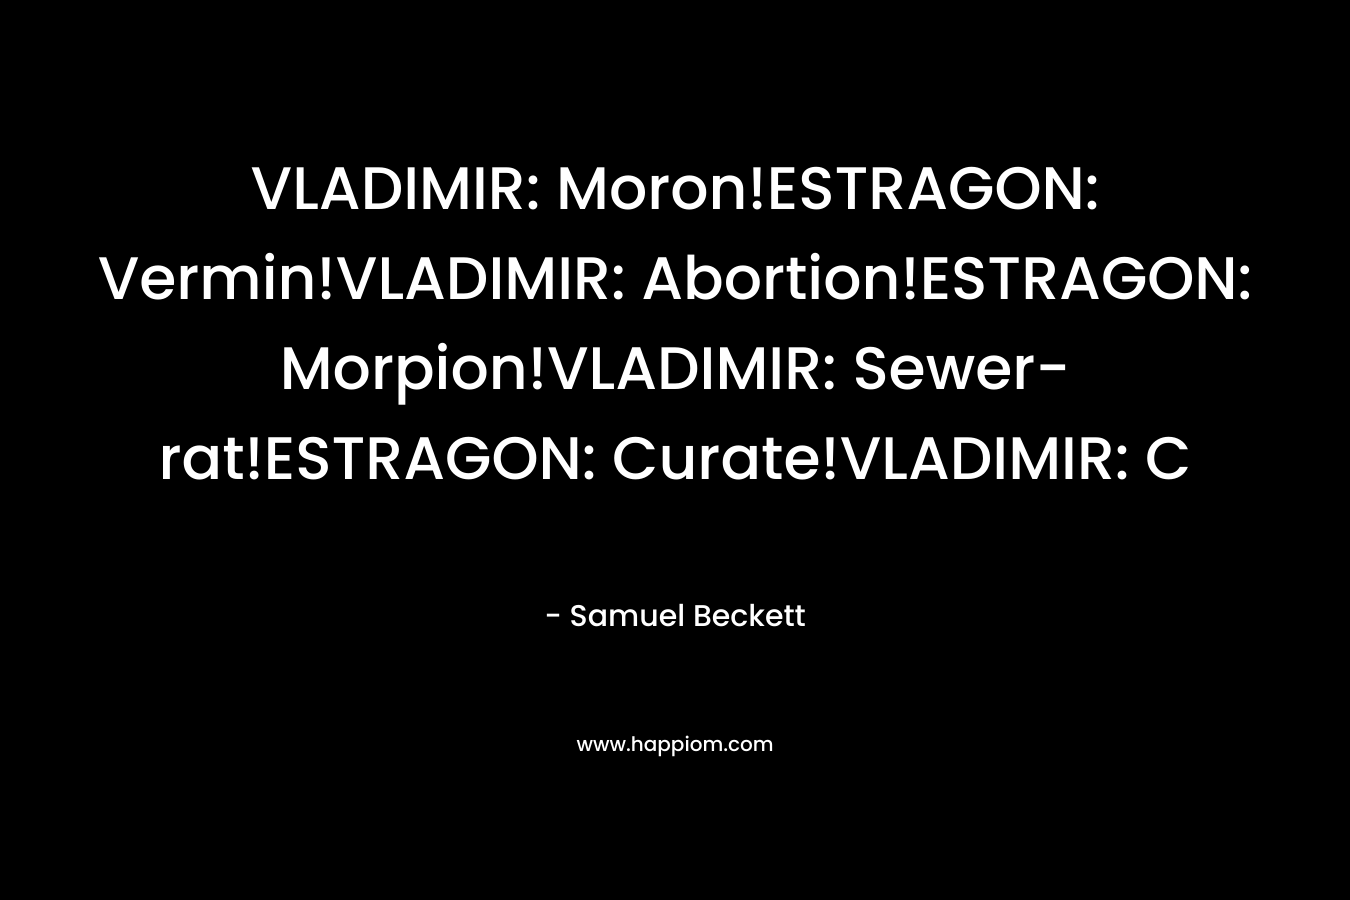 VLADIMIR: Moron!ESTRAGON: Vermin!VLADIMIR: Abortion!ESTRAGON: Morpion!VLADIMIR: Sewer-rat!ESTRAGON: Curate!VLADIMIR: C – Samuel Beckett